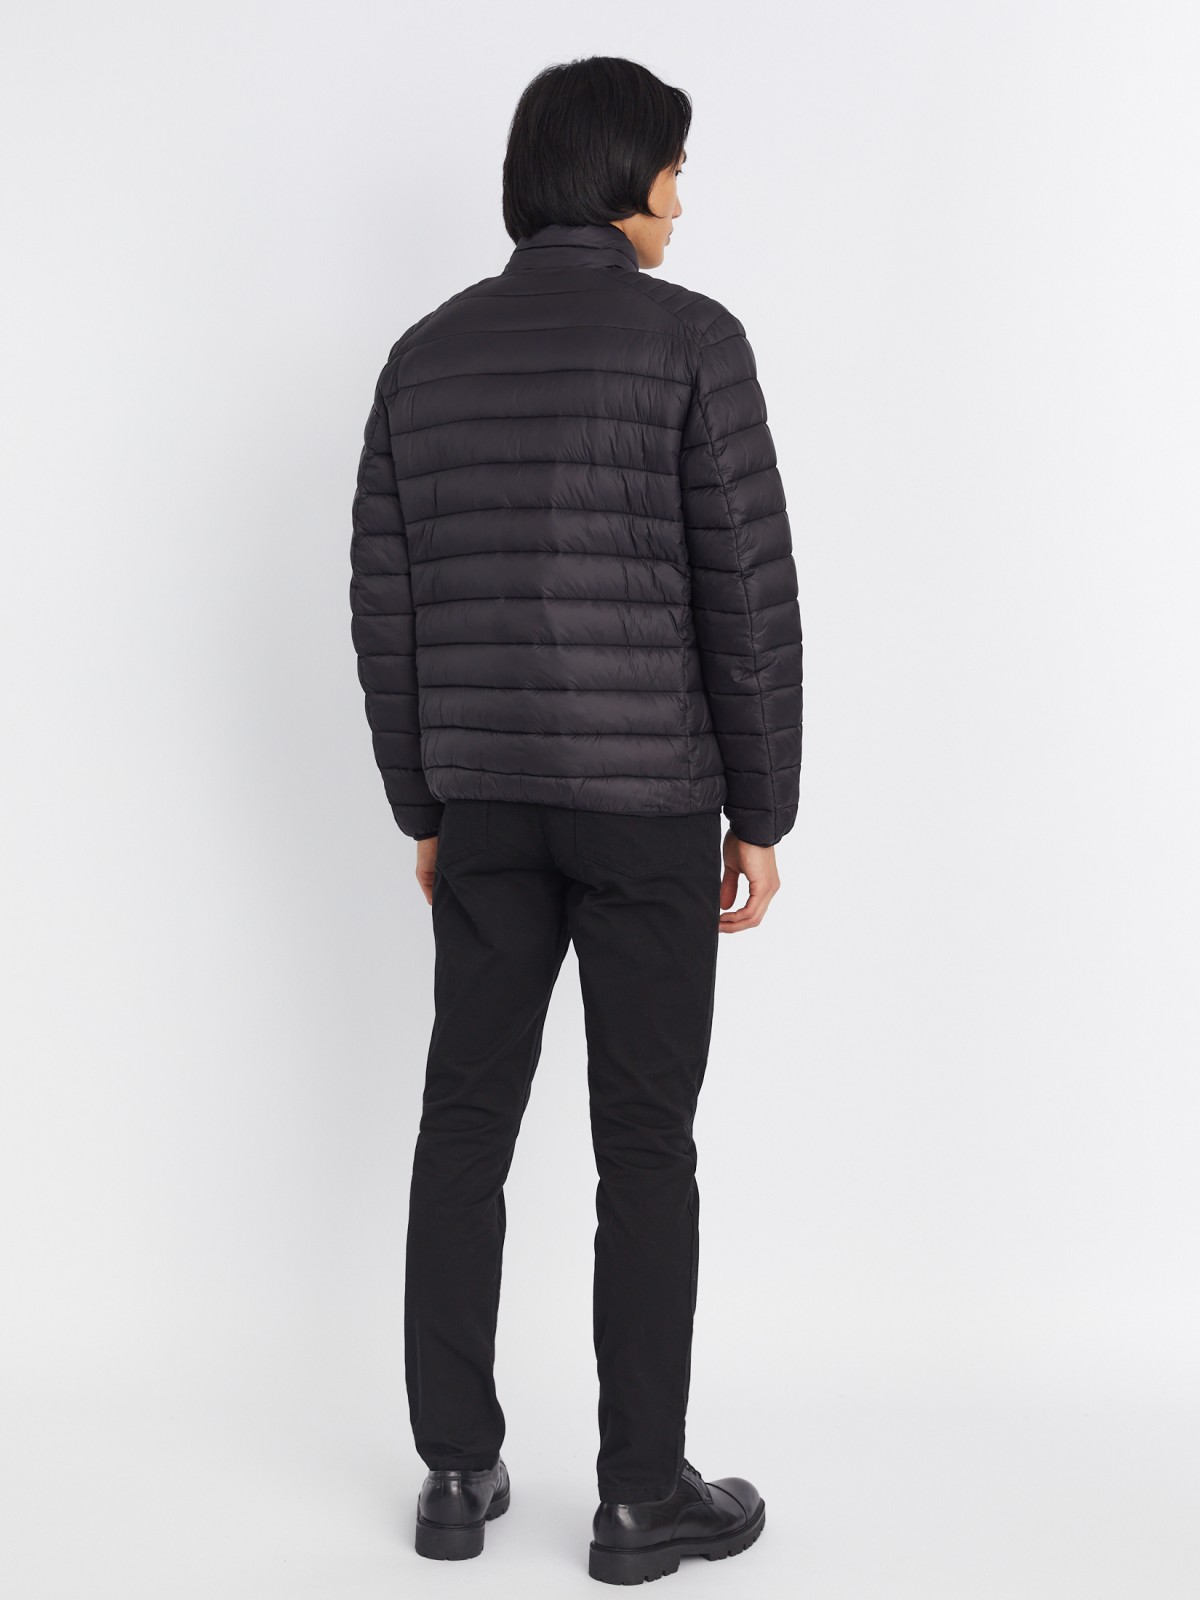 Лёгкая утеплённая стёганая куртка на молнии с воротником-стойкой zolla 013335102064, цвет черный, размер S - фото 6